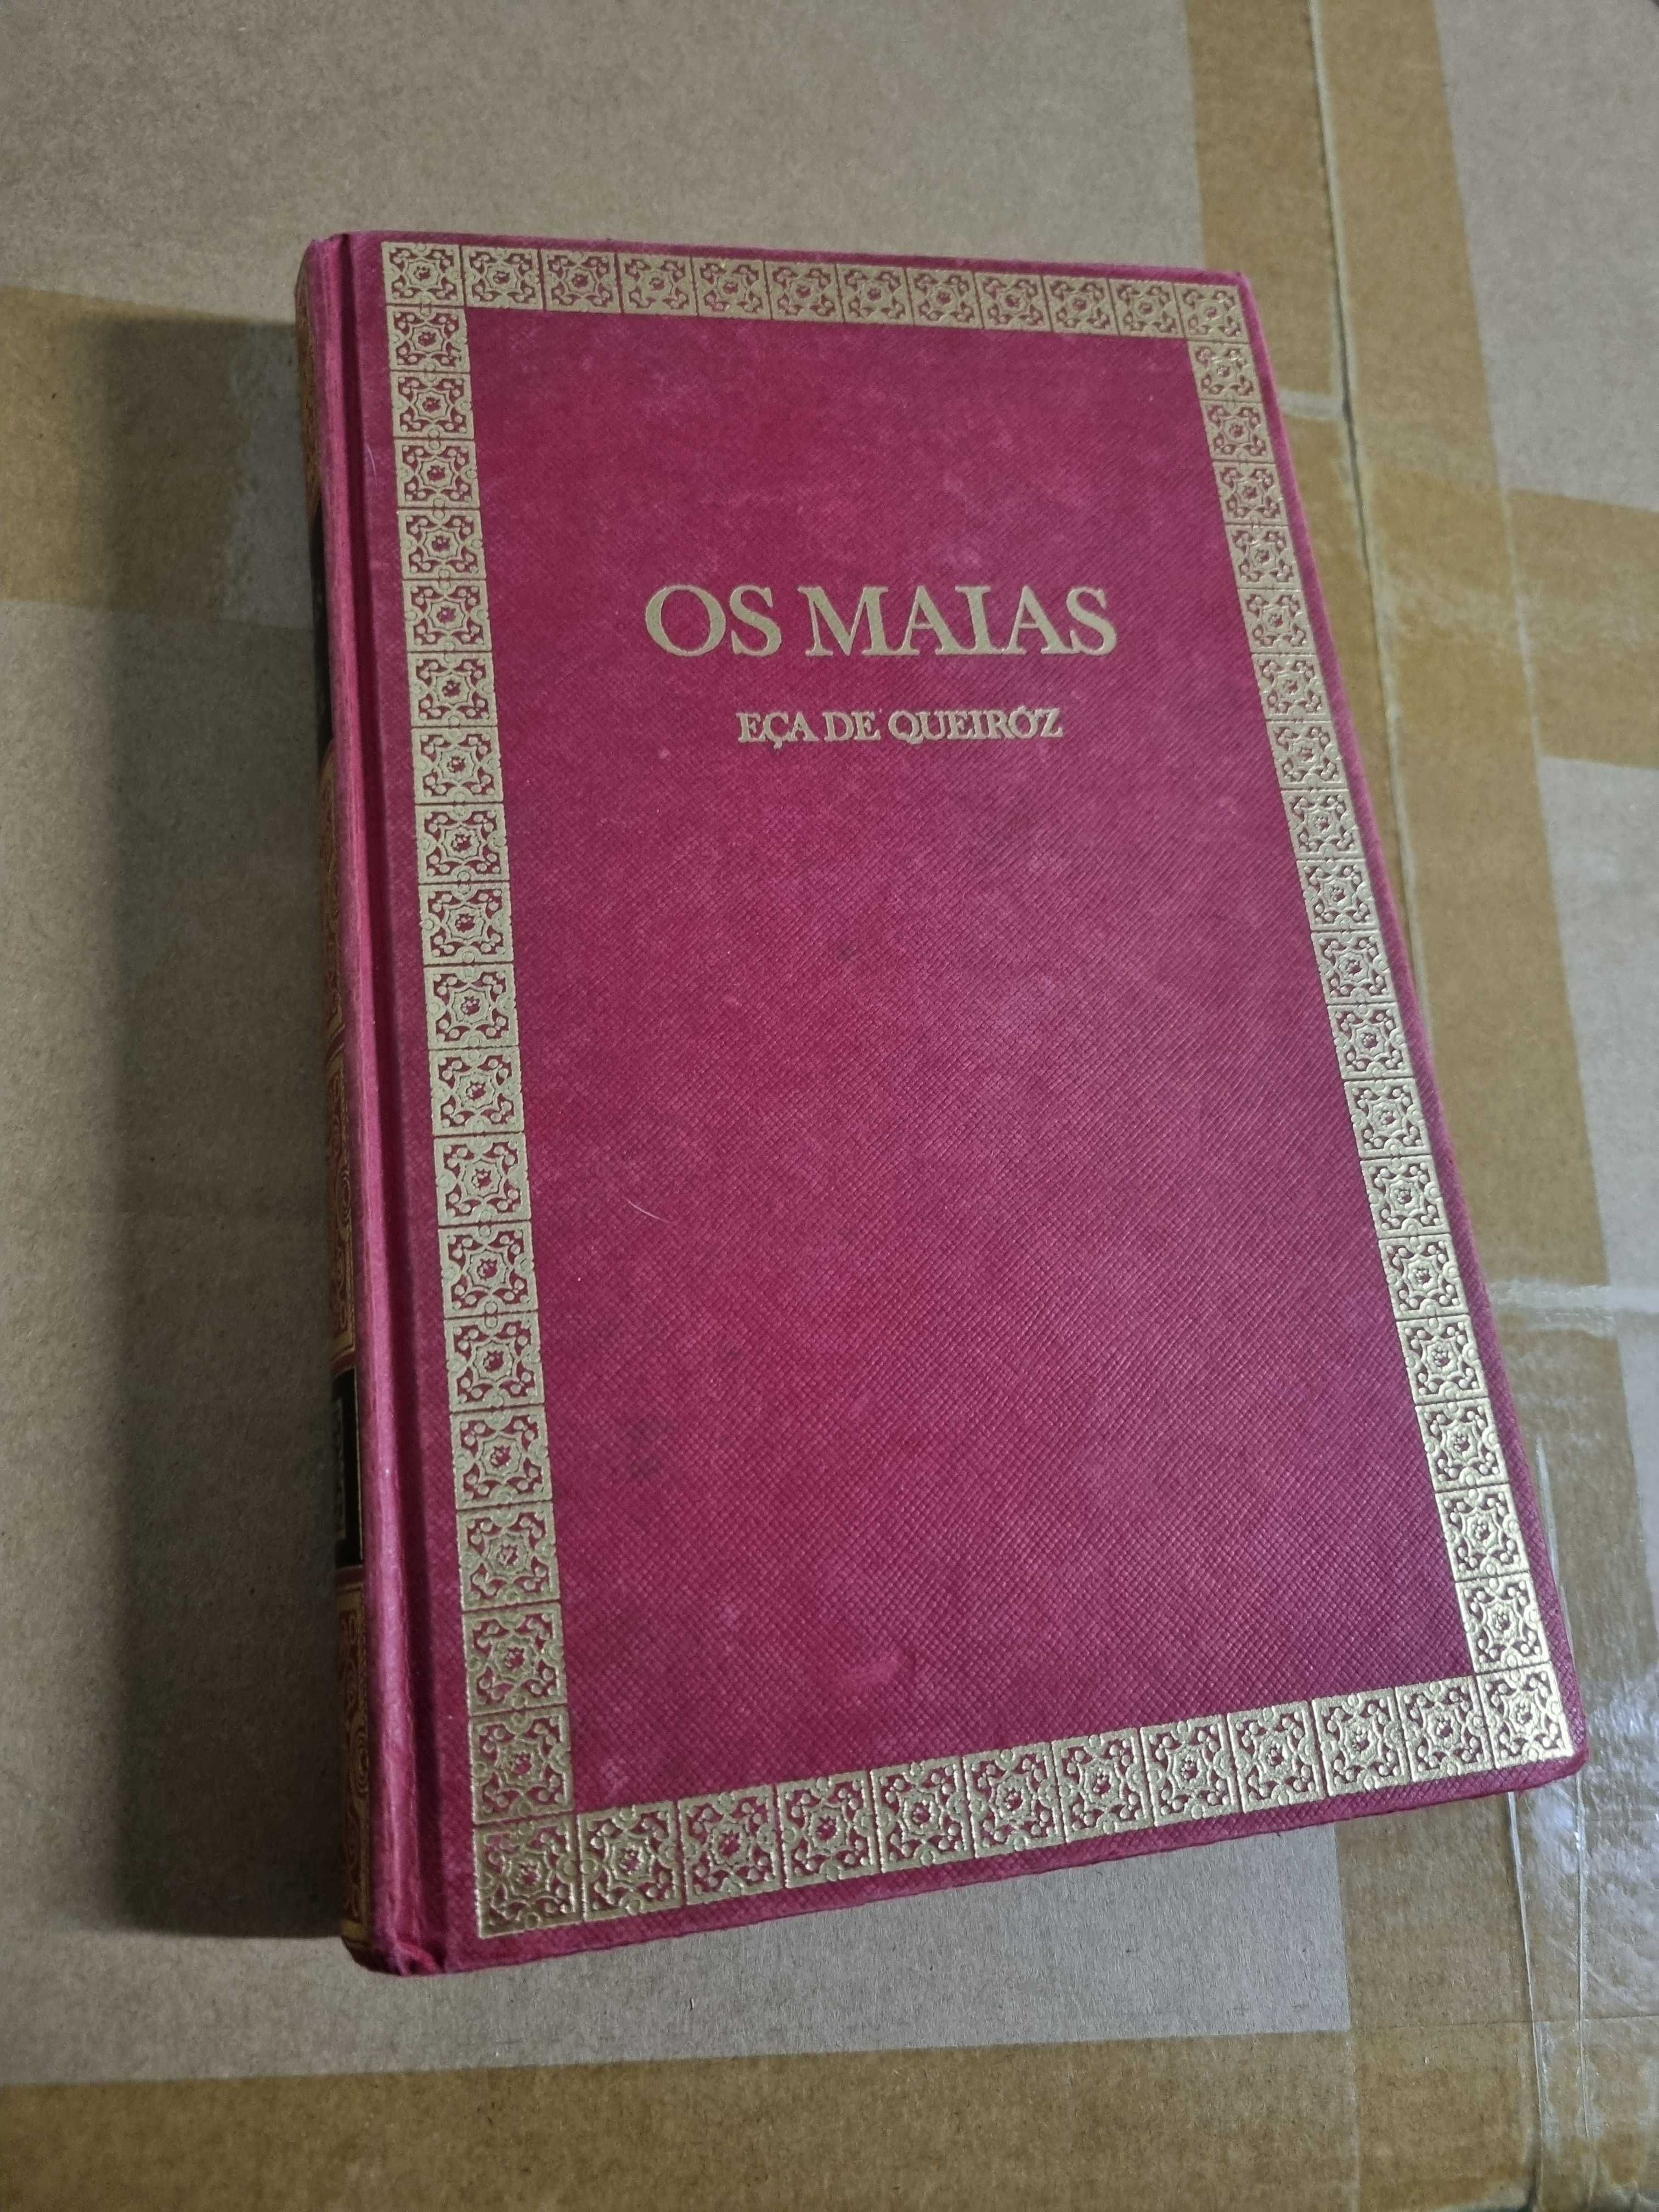 18 Livros de edição antiga (Os Maias, Lusíadas, etc)